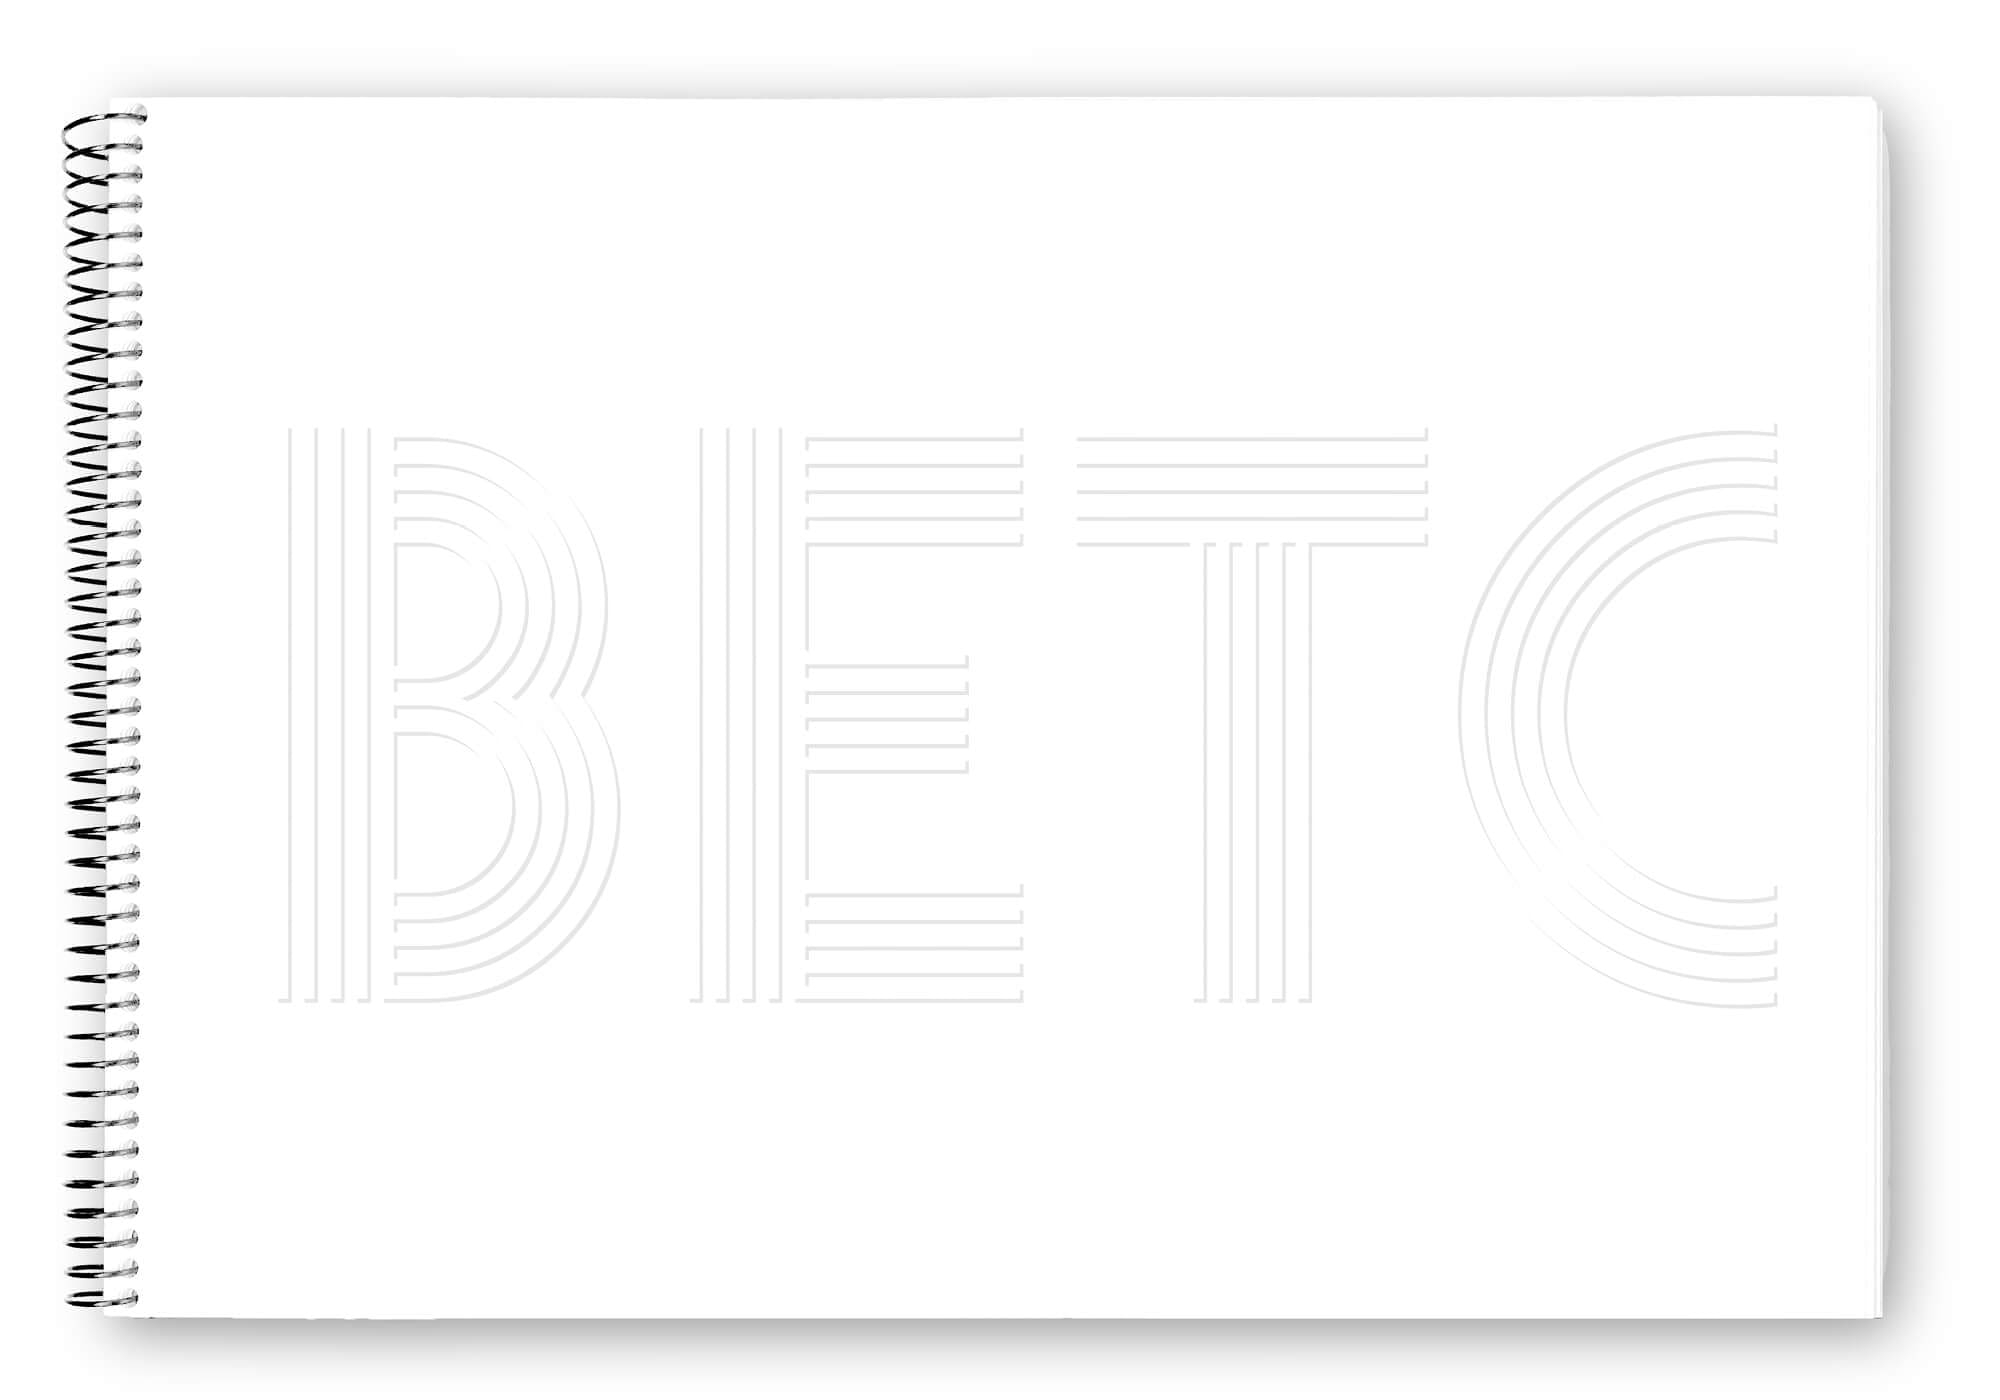 Carnet de l'agence de publicité BETC, version blanche avec gaufrage, design Ichetkar